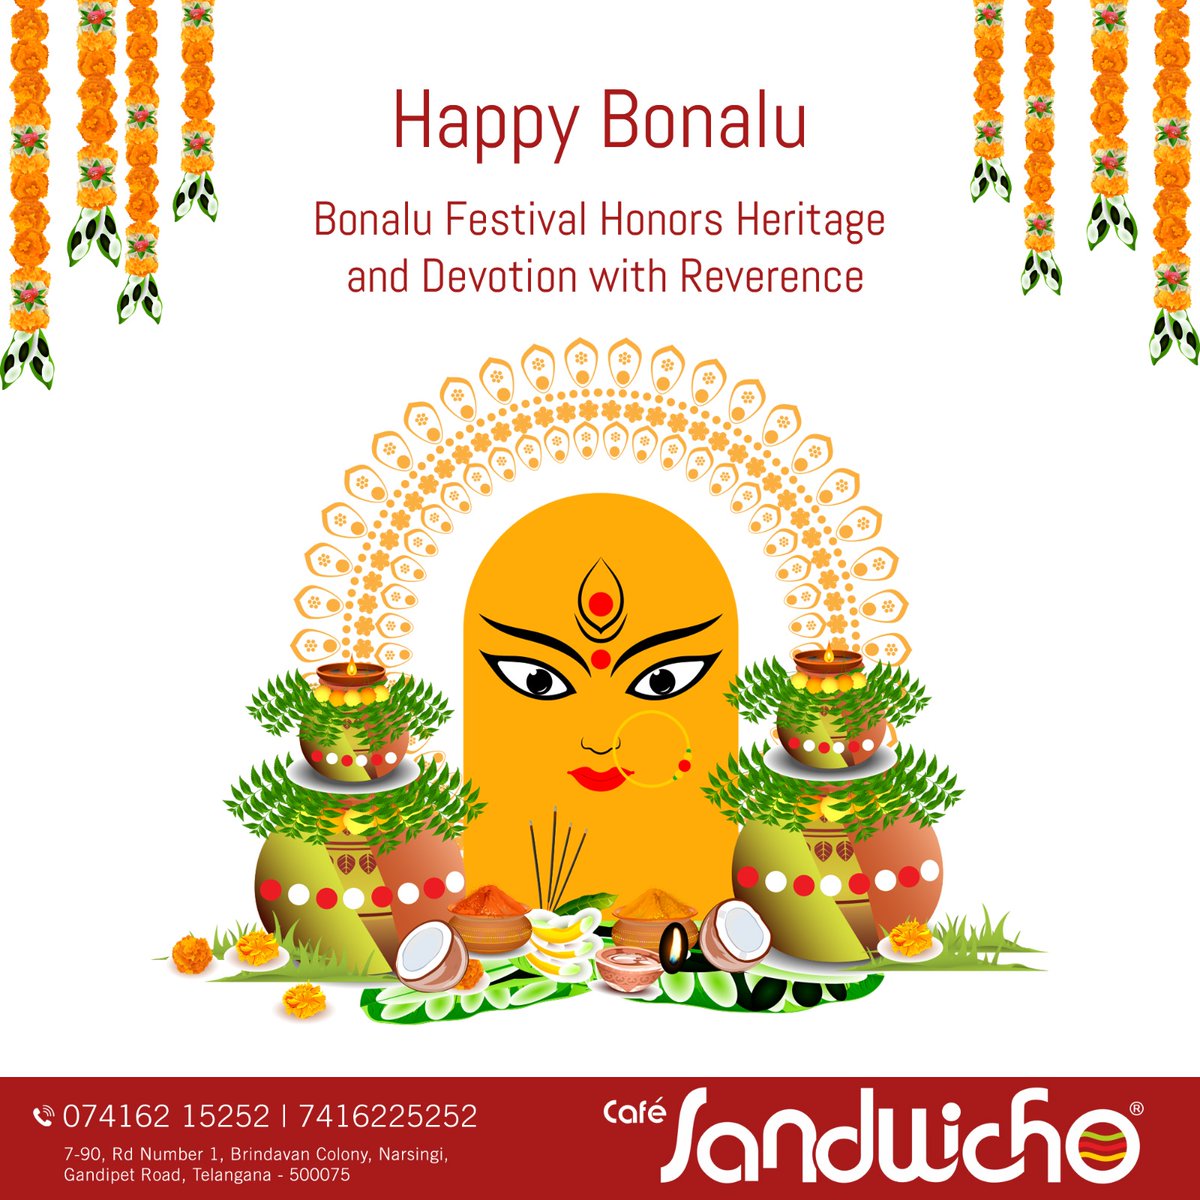 Indulging in the flavors and traditions of Bonalu! 📷📷! Happy Bonalu!
#happybonalu #telanganafestival #bonalu #telangana #telanganabonalu #telugu #india #srujanahospitals #Quthbullapur #Hyderabad